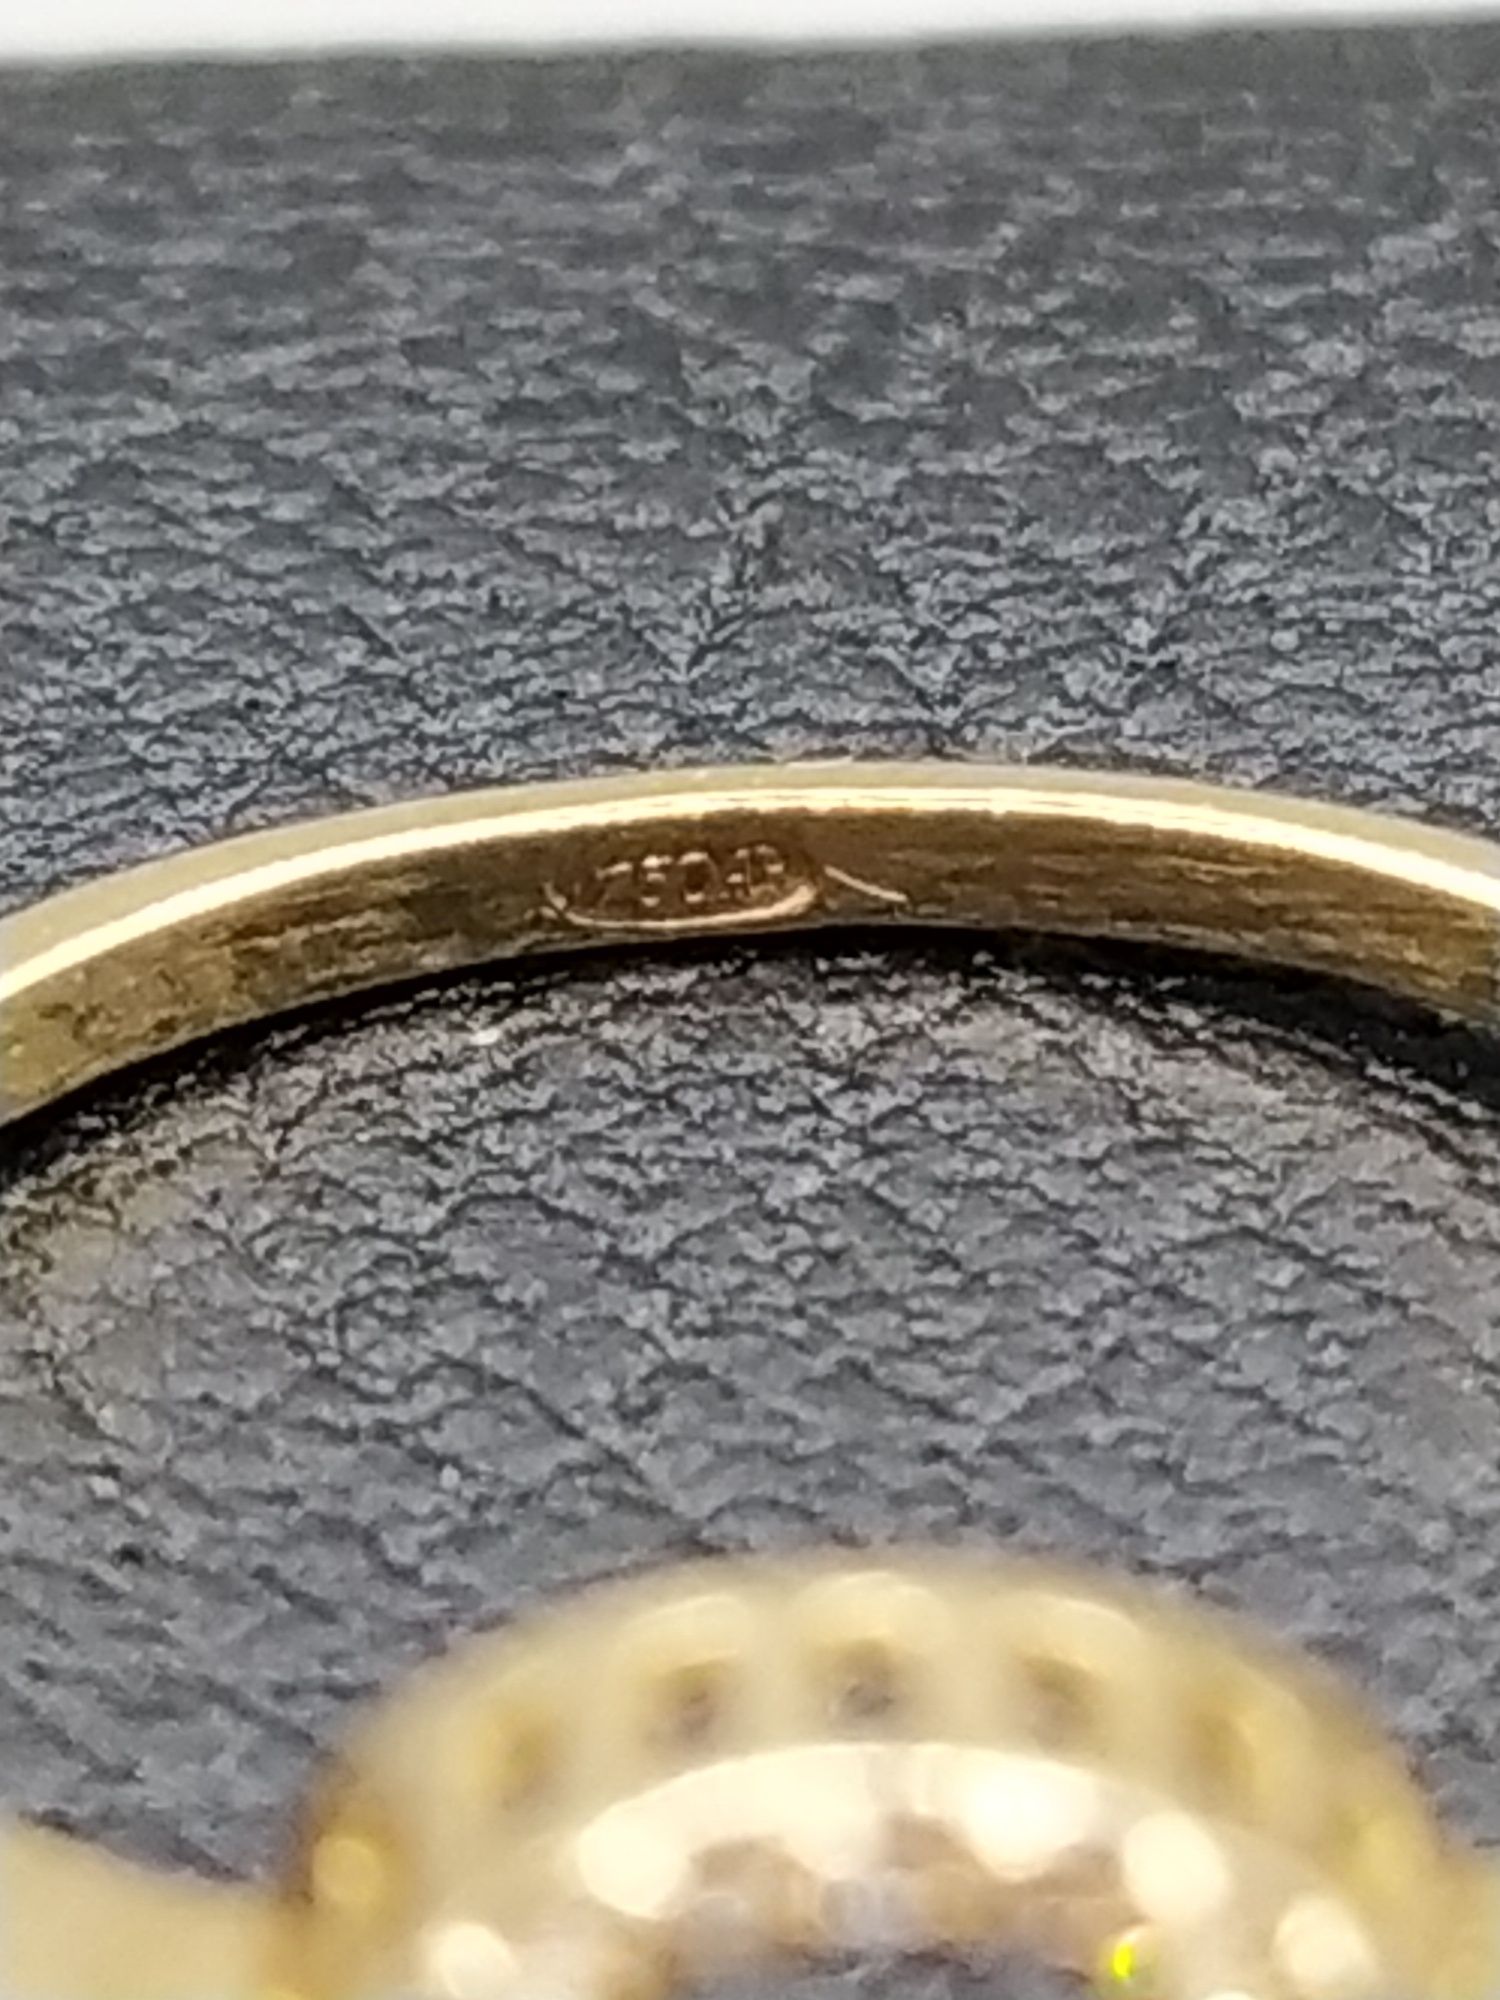 Золотое кольцо с Красной Бирманской шпинелью, рубинами и бриллиантами